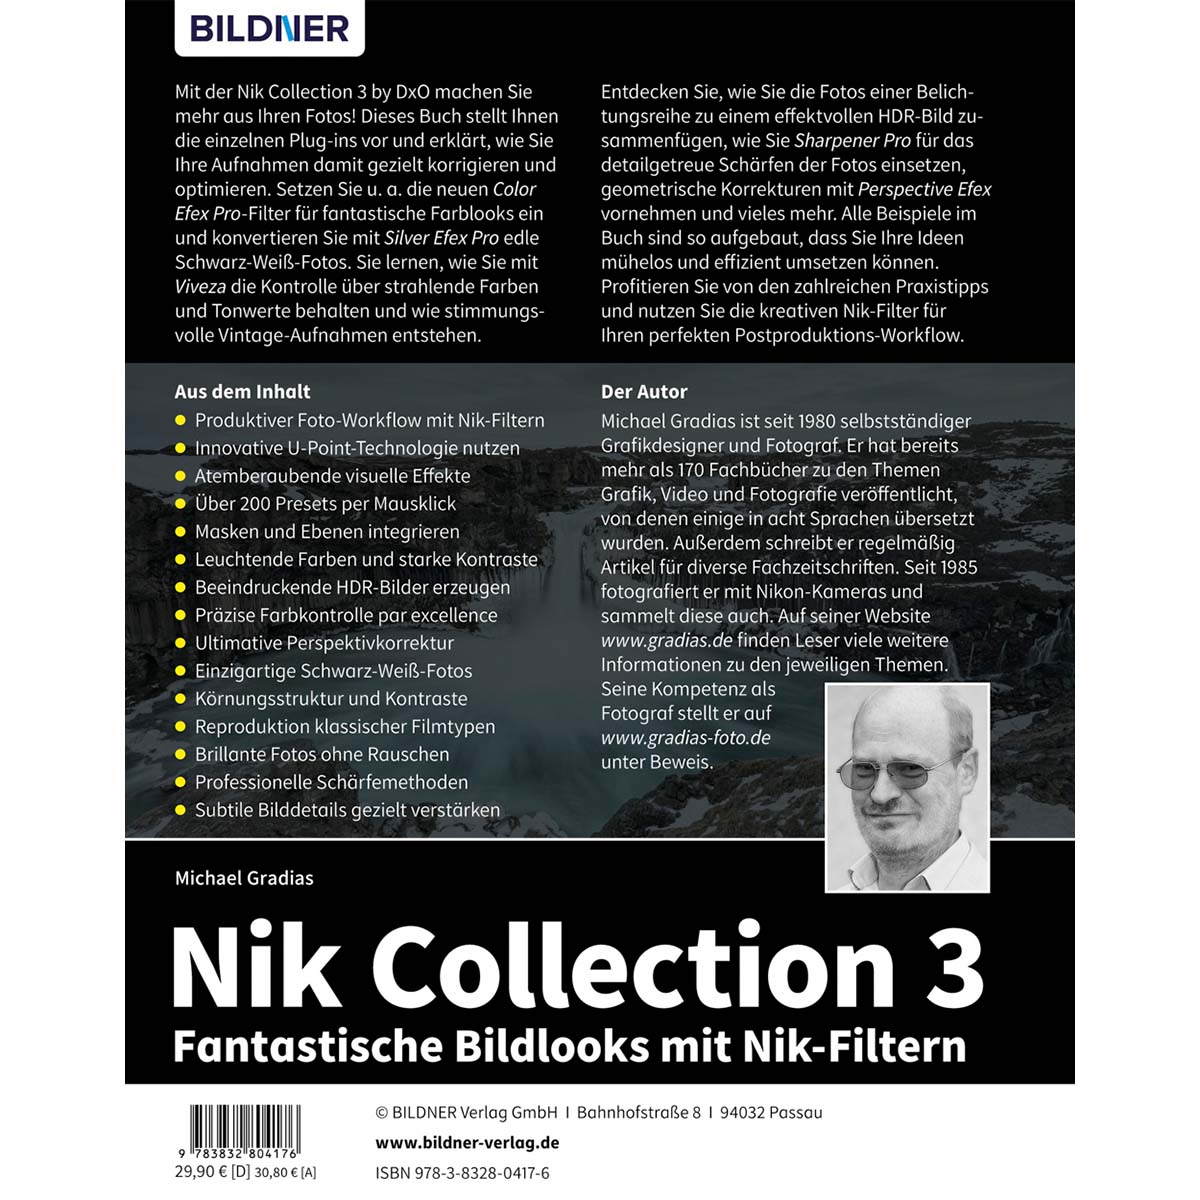 Nik Collection Bildlooks - Nik-Filtern mit Fantastische 3